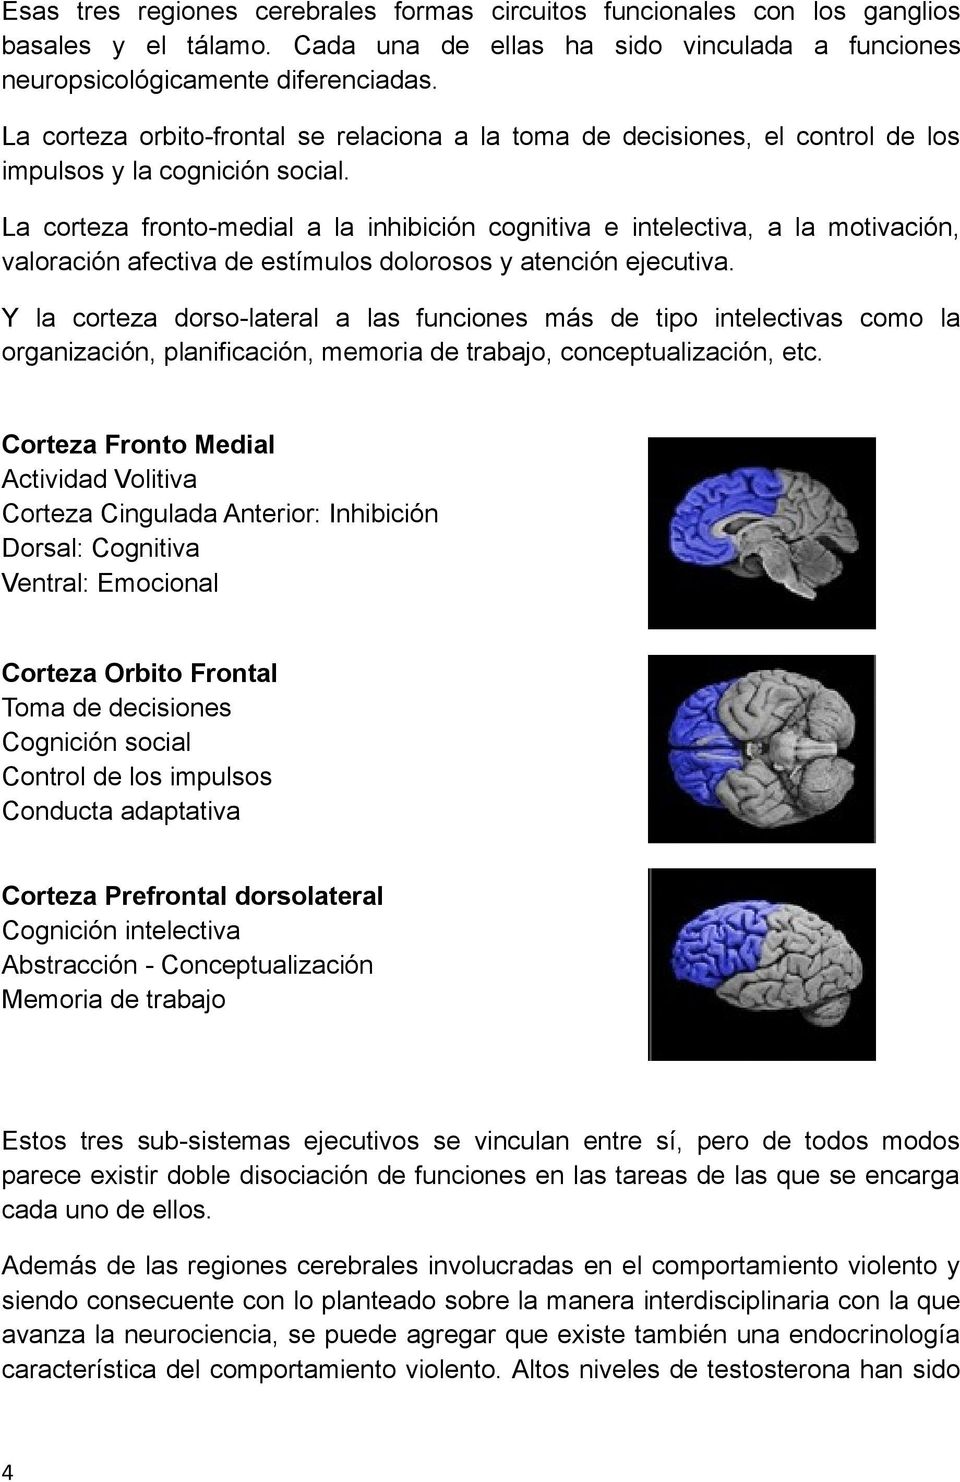 La corteza fronto-medial a la inhibición cognitiva e intelectiva, a la motivación, valoración afectiva de estímulos dolorosos y atención ejecutiva.